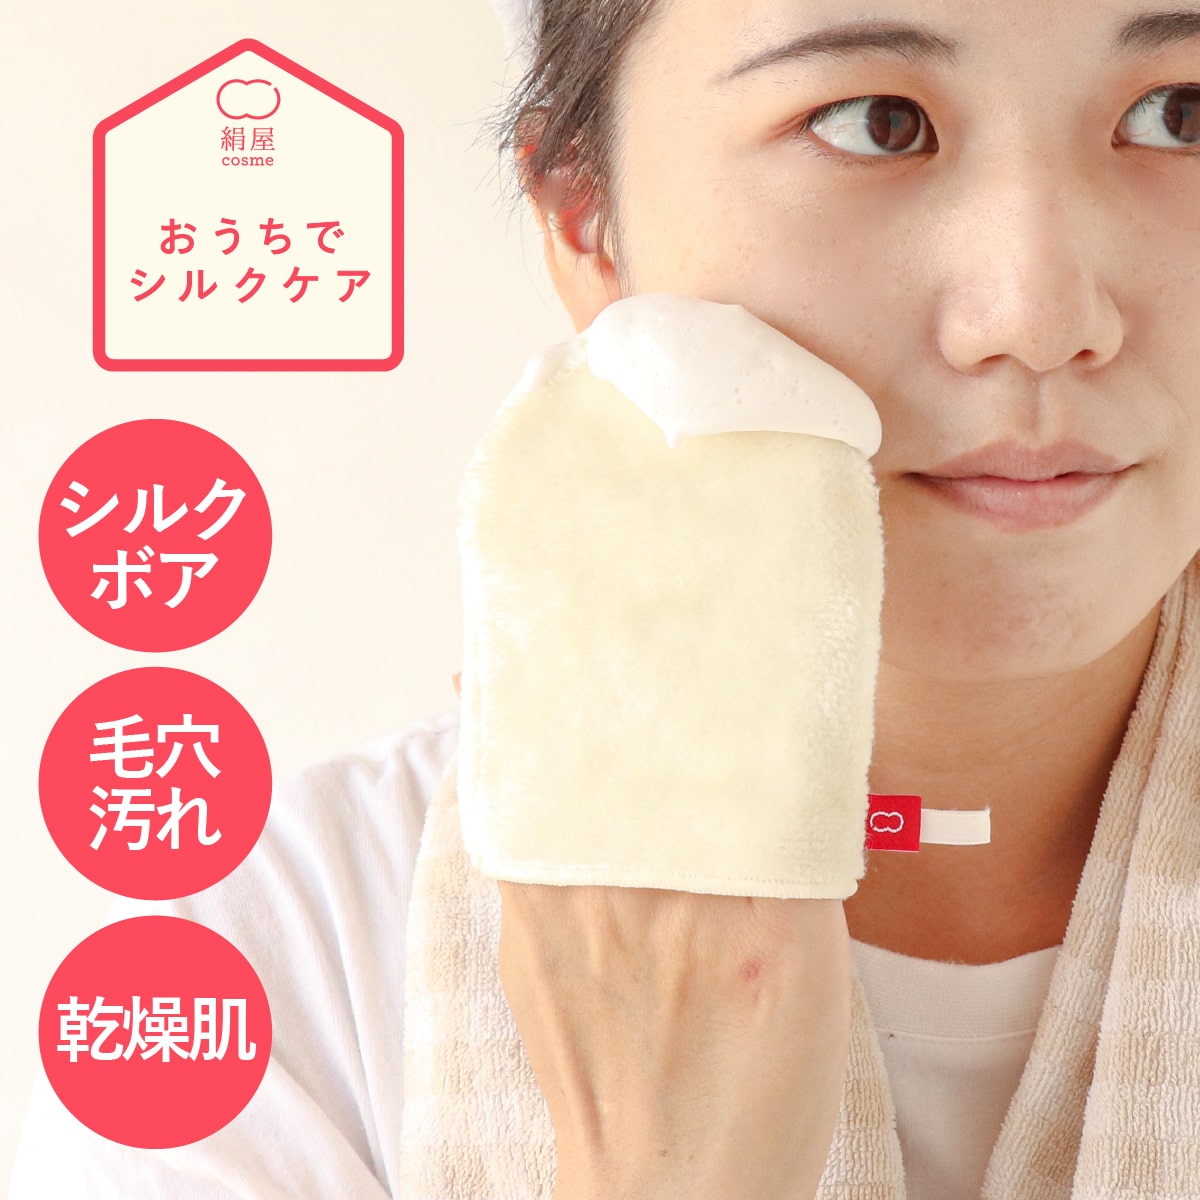 洗顔 ミトン シルク 敏感肌 乾燥肌 美容 美白 コスメ 絹 綿 コットン 絹屋 日本製 ギフト プレゼント